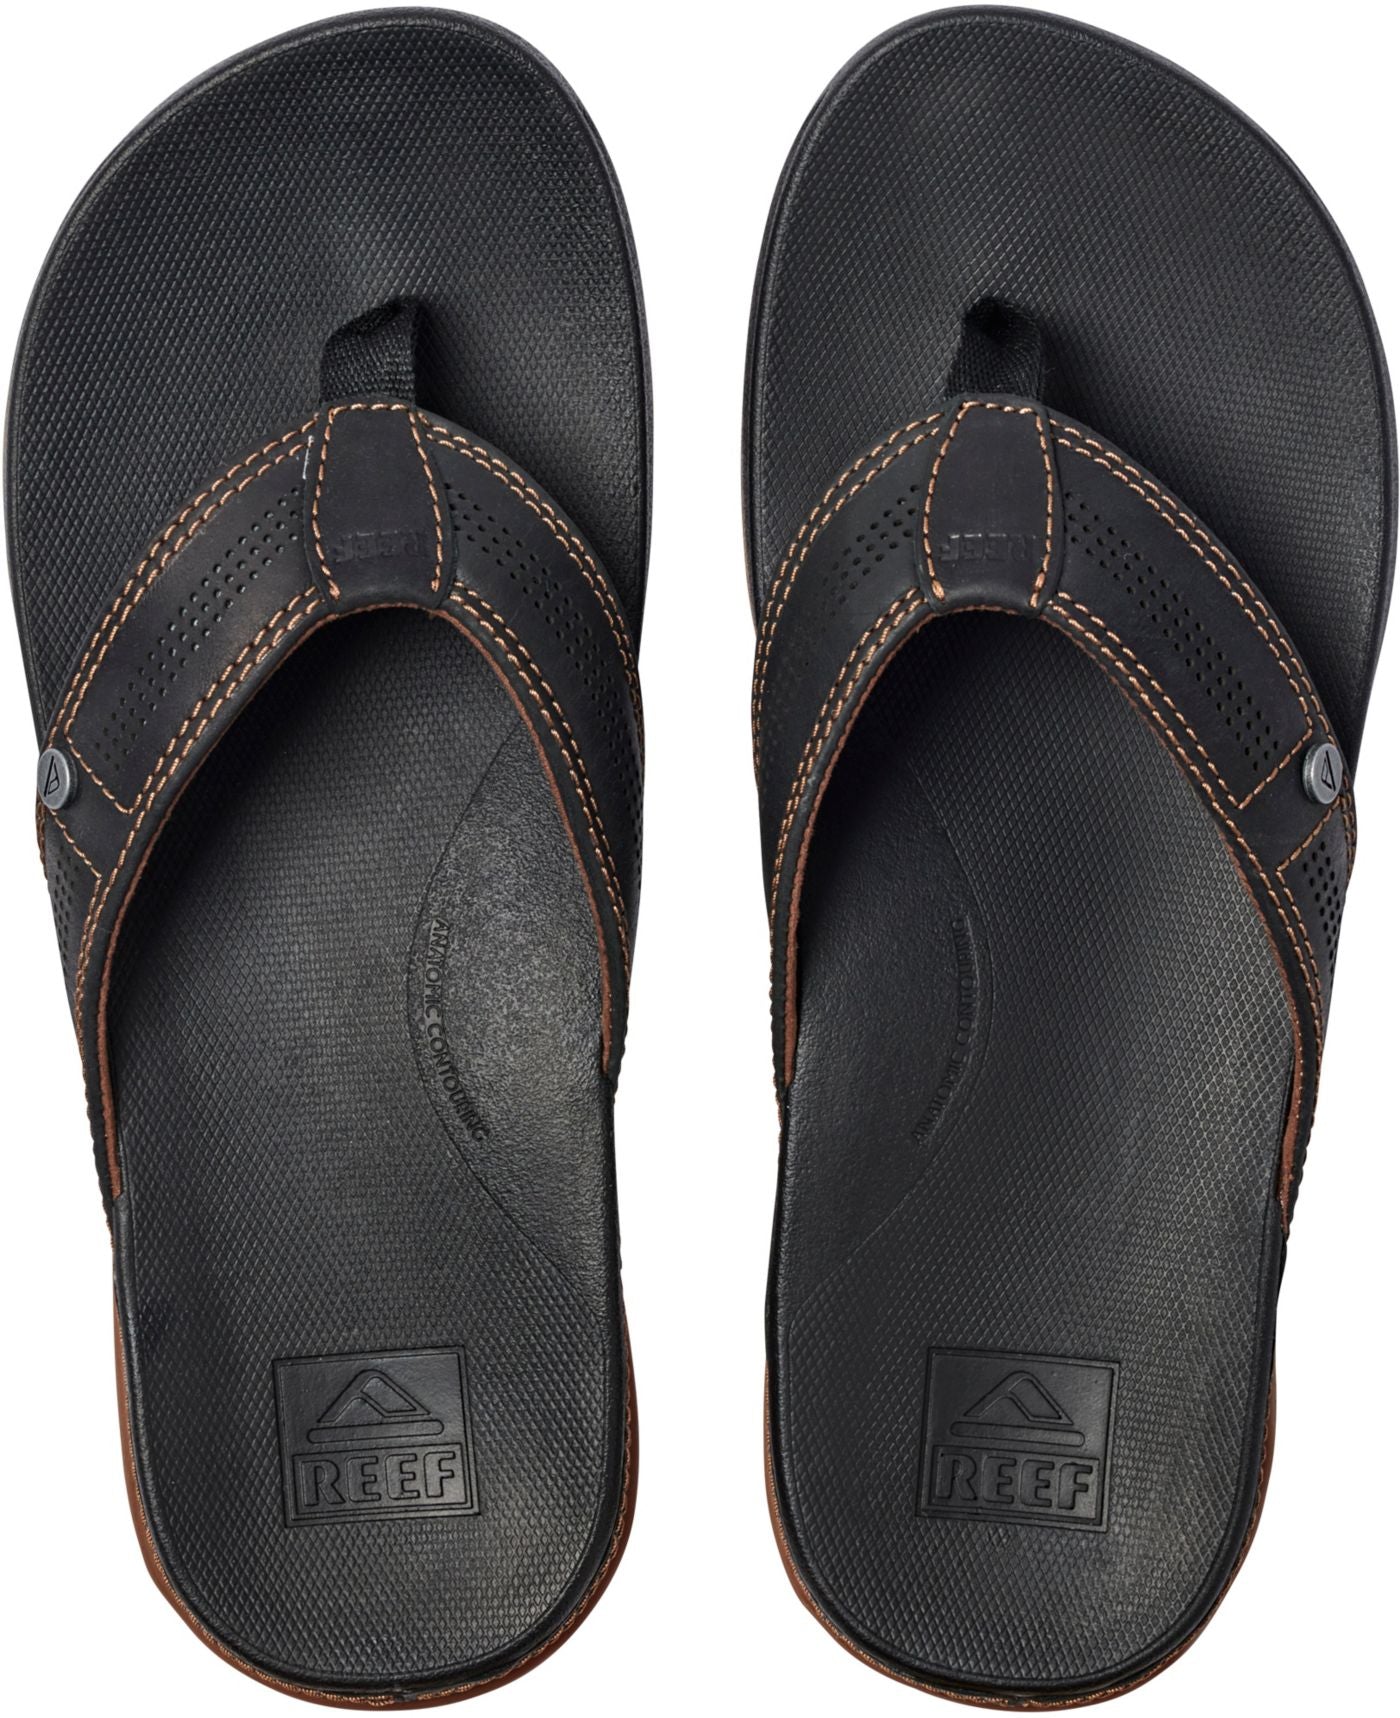 Reef Mens Cushion Bounce Lux Sandal - Black Brown Mens Footwear